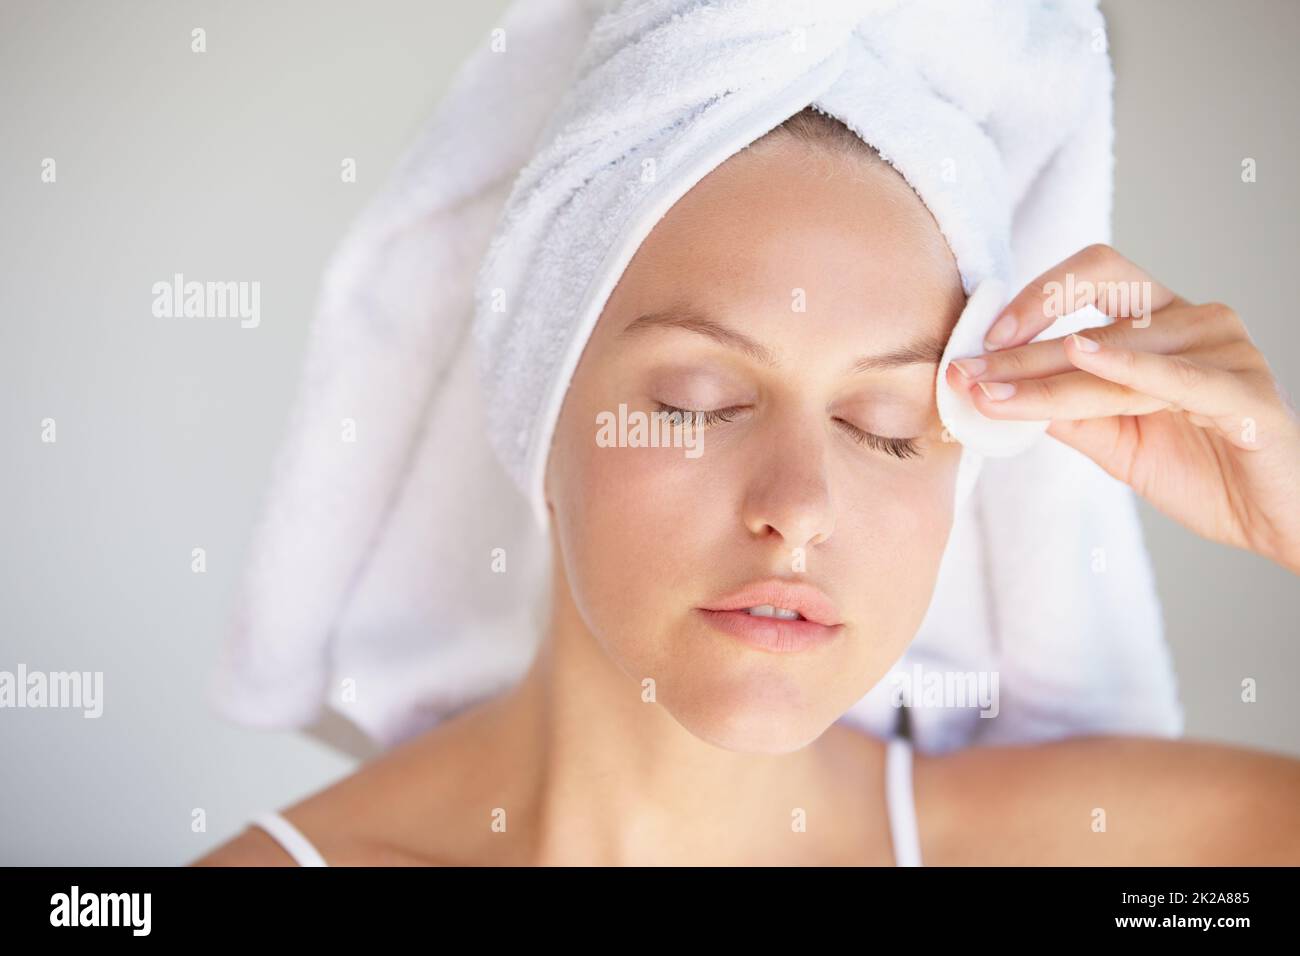 Detergere delicatamente la pelle. Closeup shot di una giovane donna attraente con i suoi capelli avvolti in un asciugamano rimuovere trucco. Foto Stock